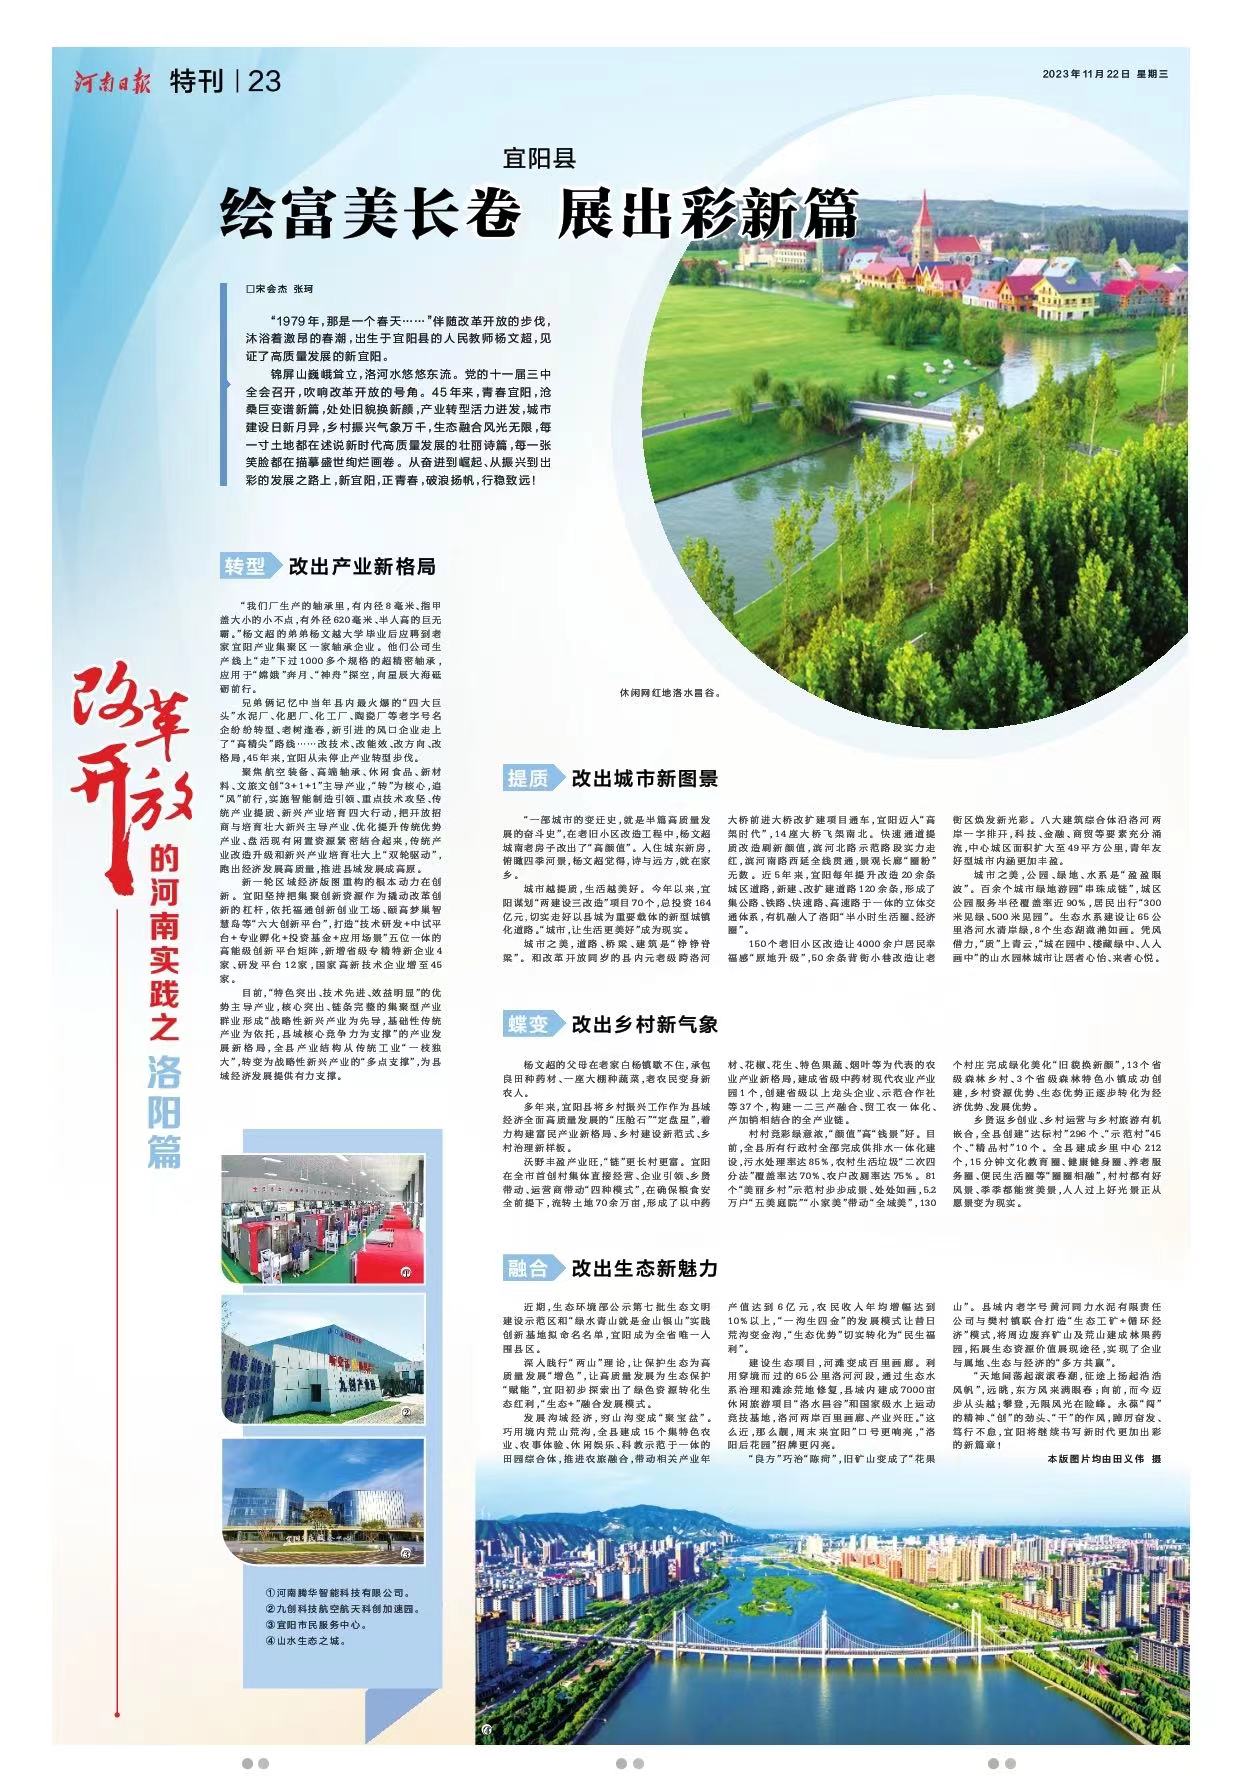 《河南日报》今日推出“改革开放的河南实践”洛阳篇：潮涌河洛